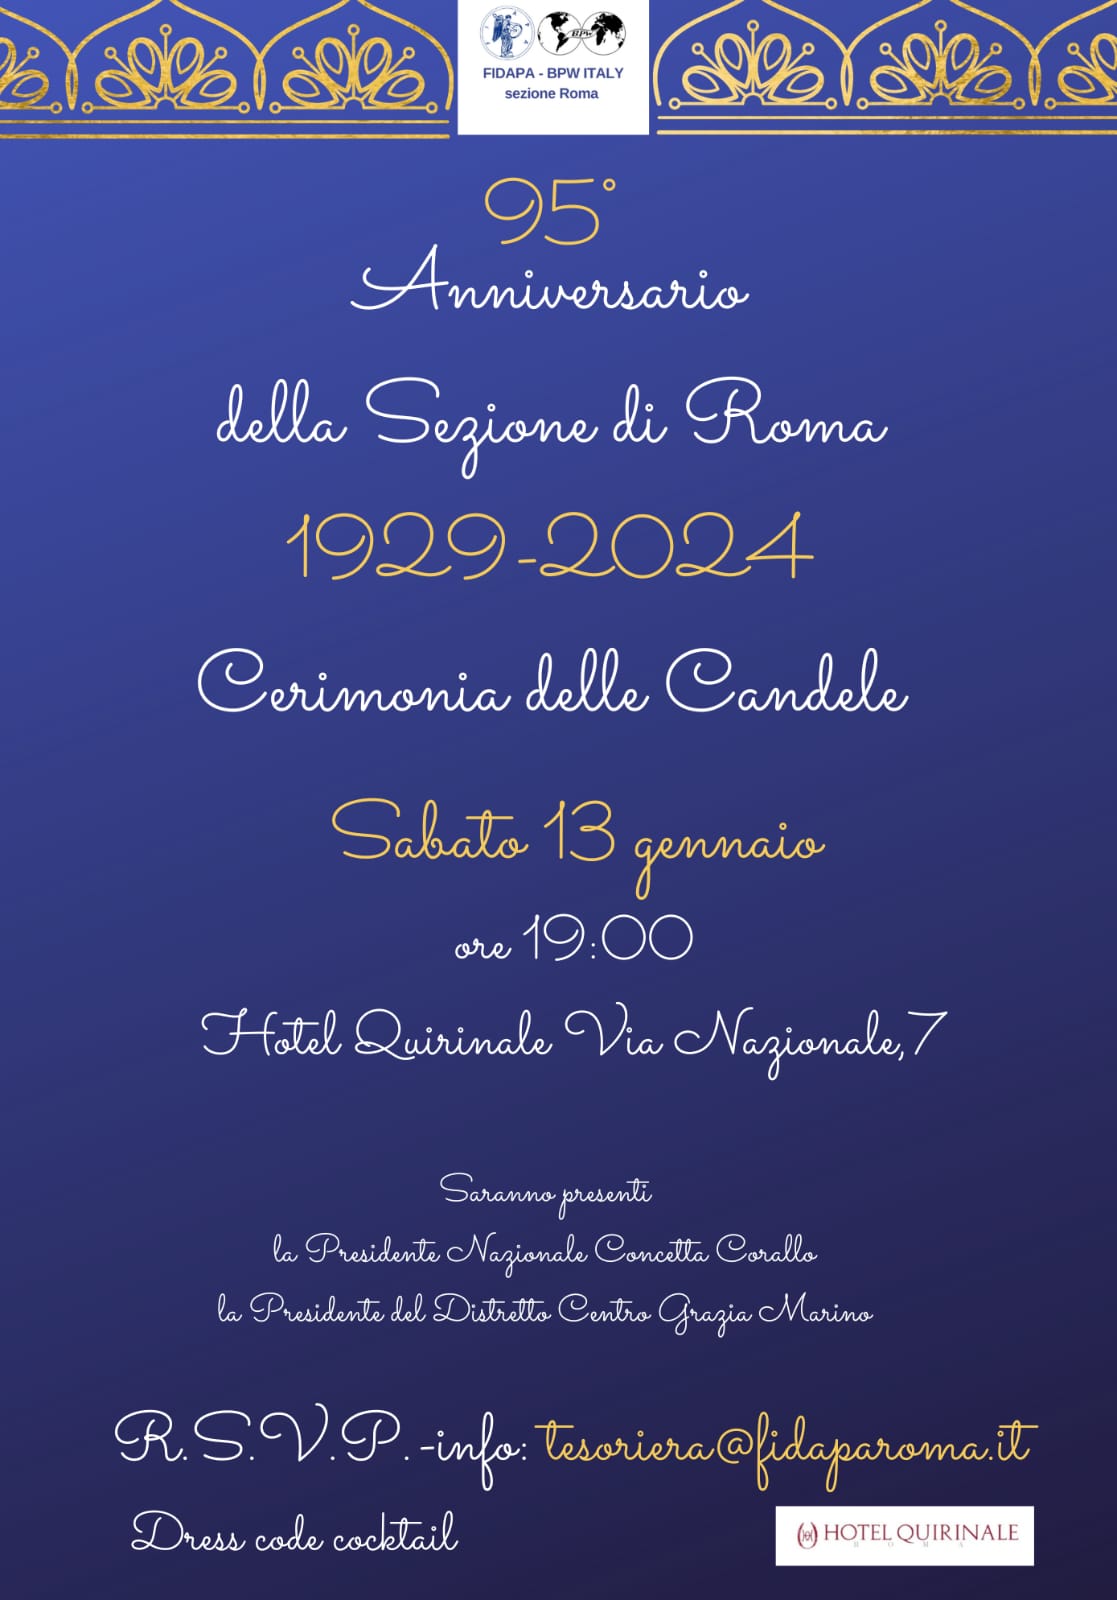 Cerimonia delle candele e 95° Anniversario della  sezione Roma.